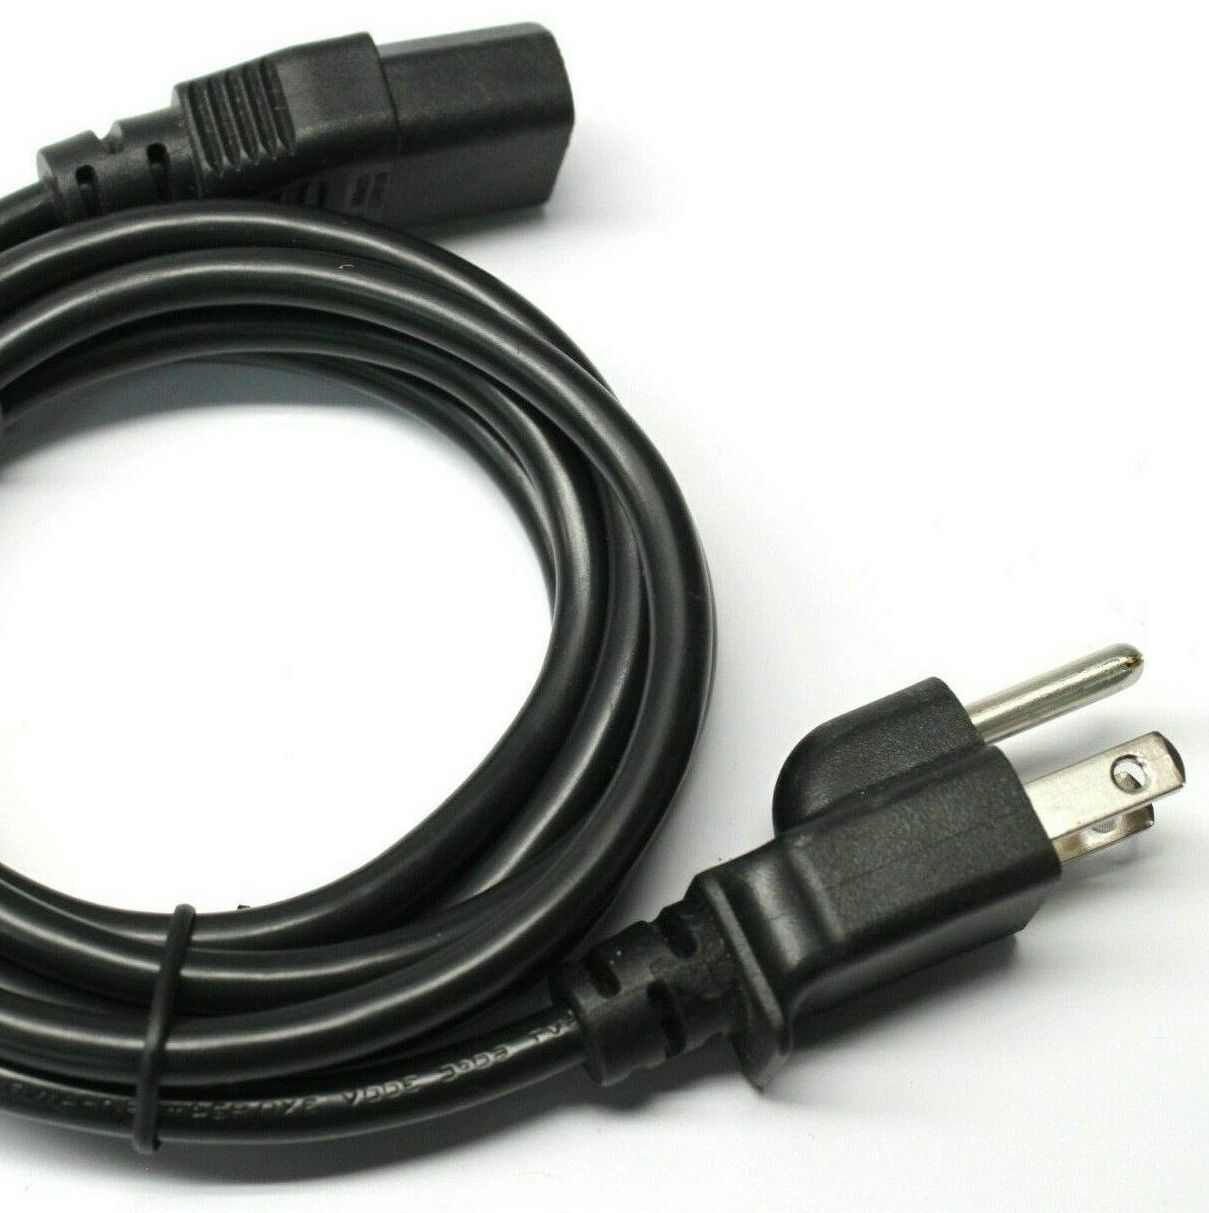 Cord Cable for Dell U3415W UP2516D UP2715K UP2716D UP3216Q Monitors